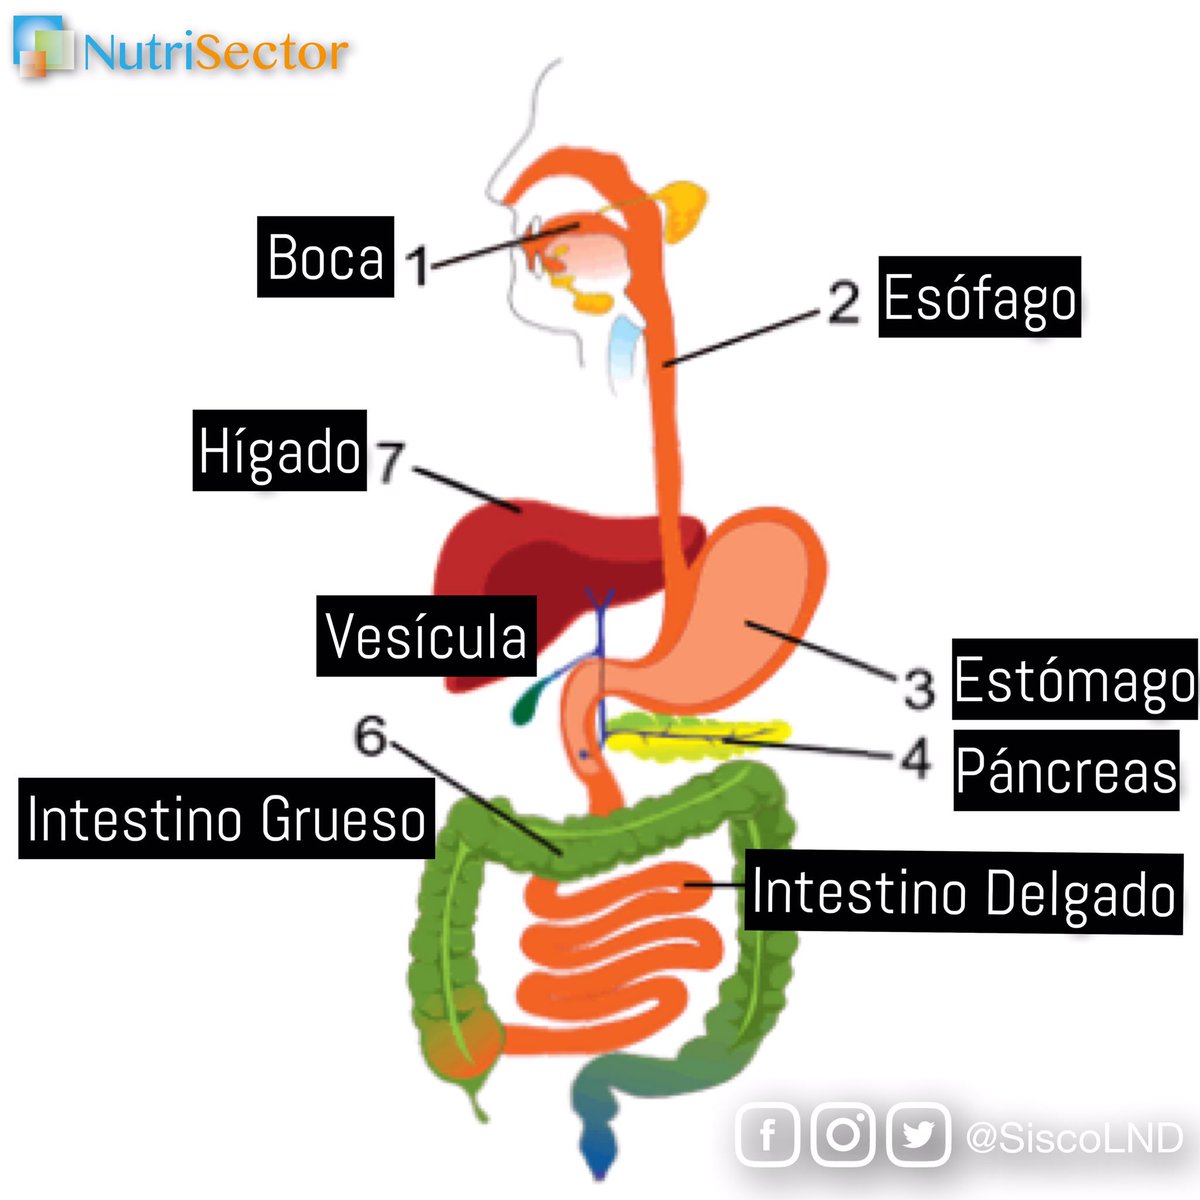 ¿Qué factores pueden afectar nuestra salud gastrointestinal? Hoy hablamos de esto en #NutriSector en la Parte2 de #detox #gihealth Aquí les comparto el enlace facebook.com/red93fm/videos… #rdchat #verdadnomoda #nofaddiets